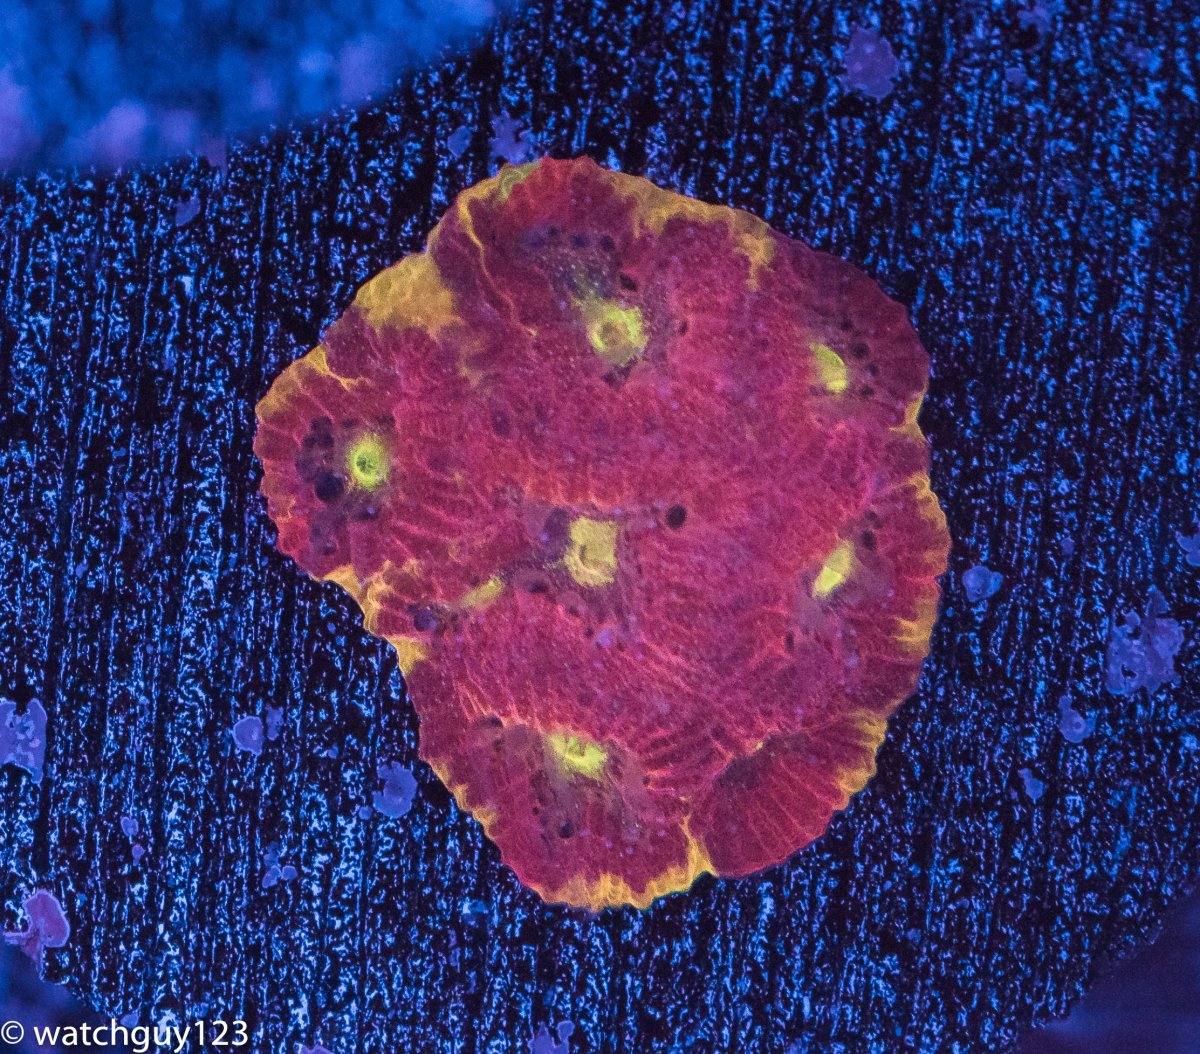 coral-23.jpg